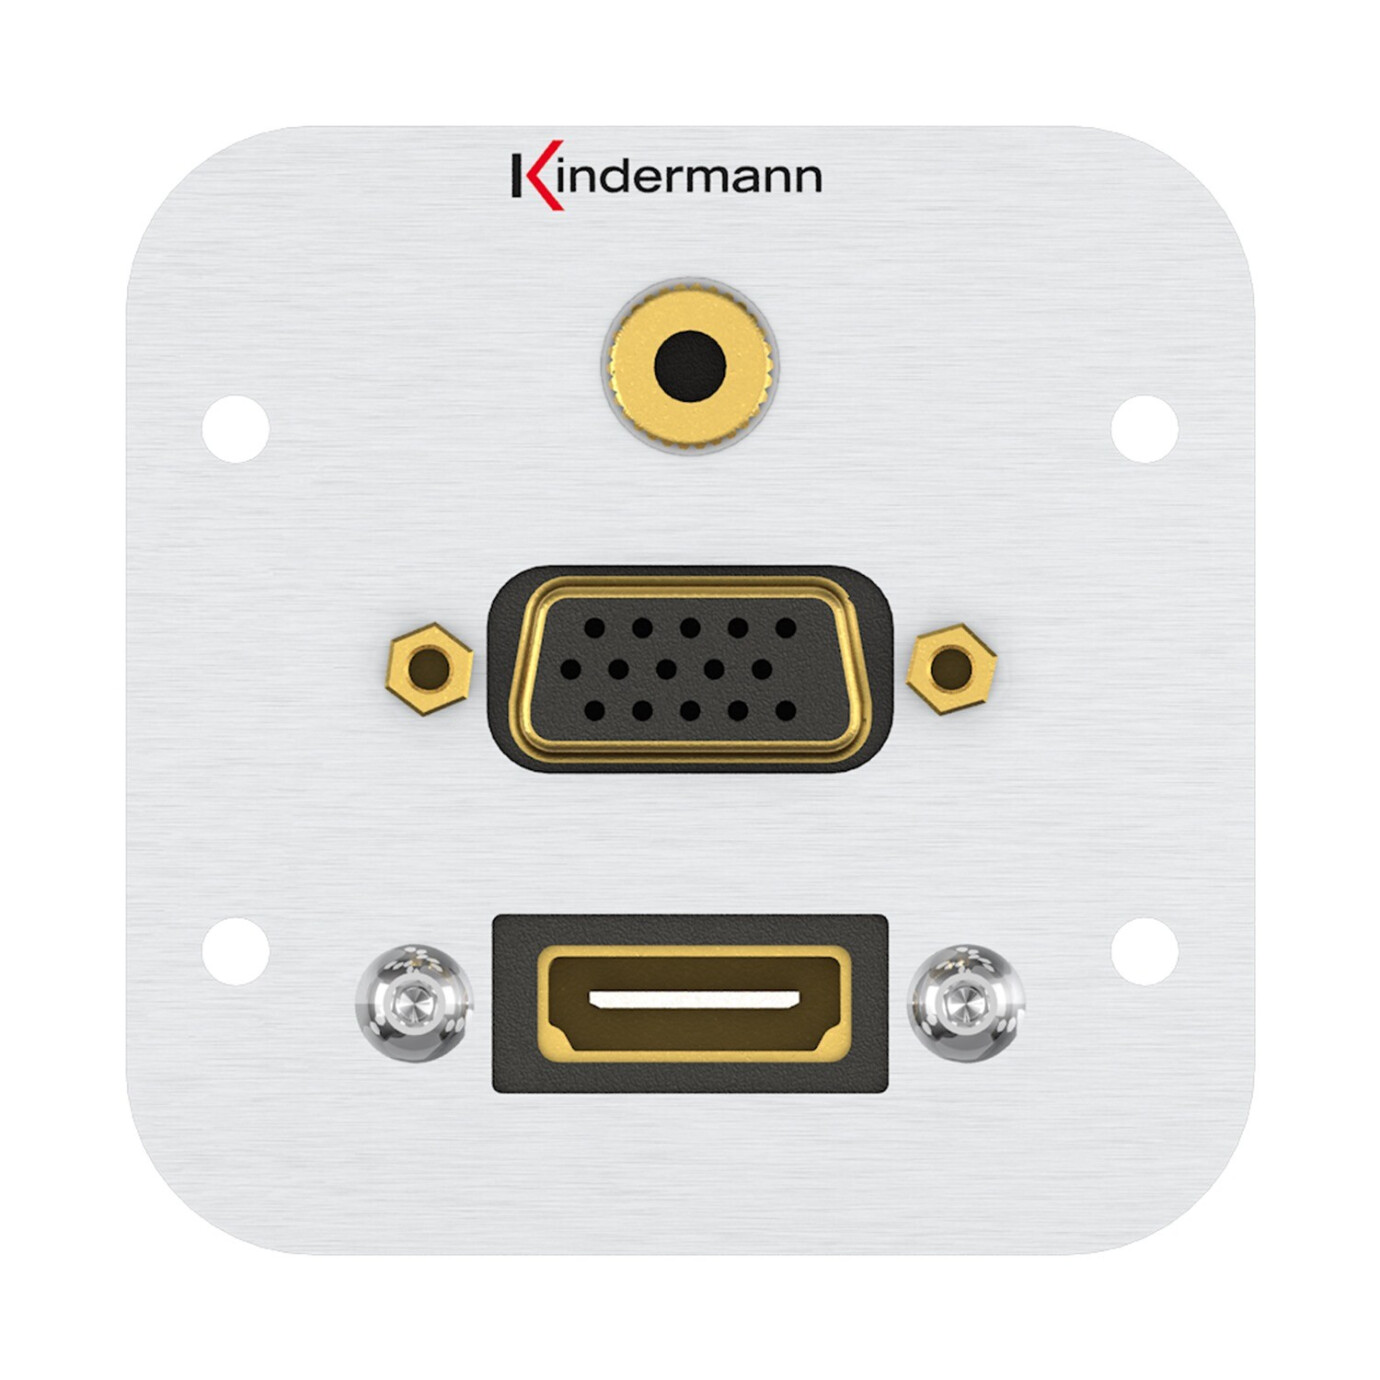 Kindermann Konnect Anschlussblende HDMI, VGA, Audio Klinke 3,5mm Stereo mit Kabelpeitsche Vollblende 54 x 54 mm Aluminium eloxiert